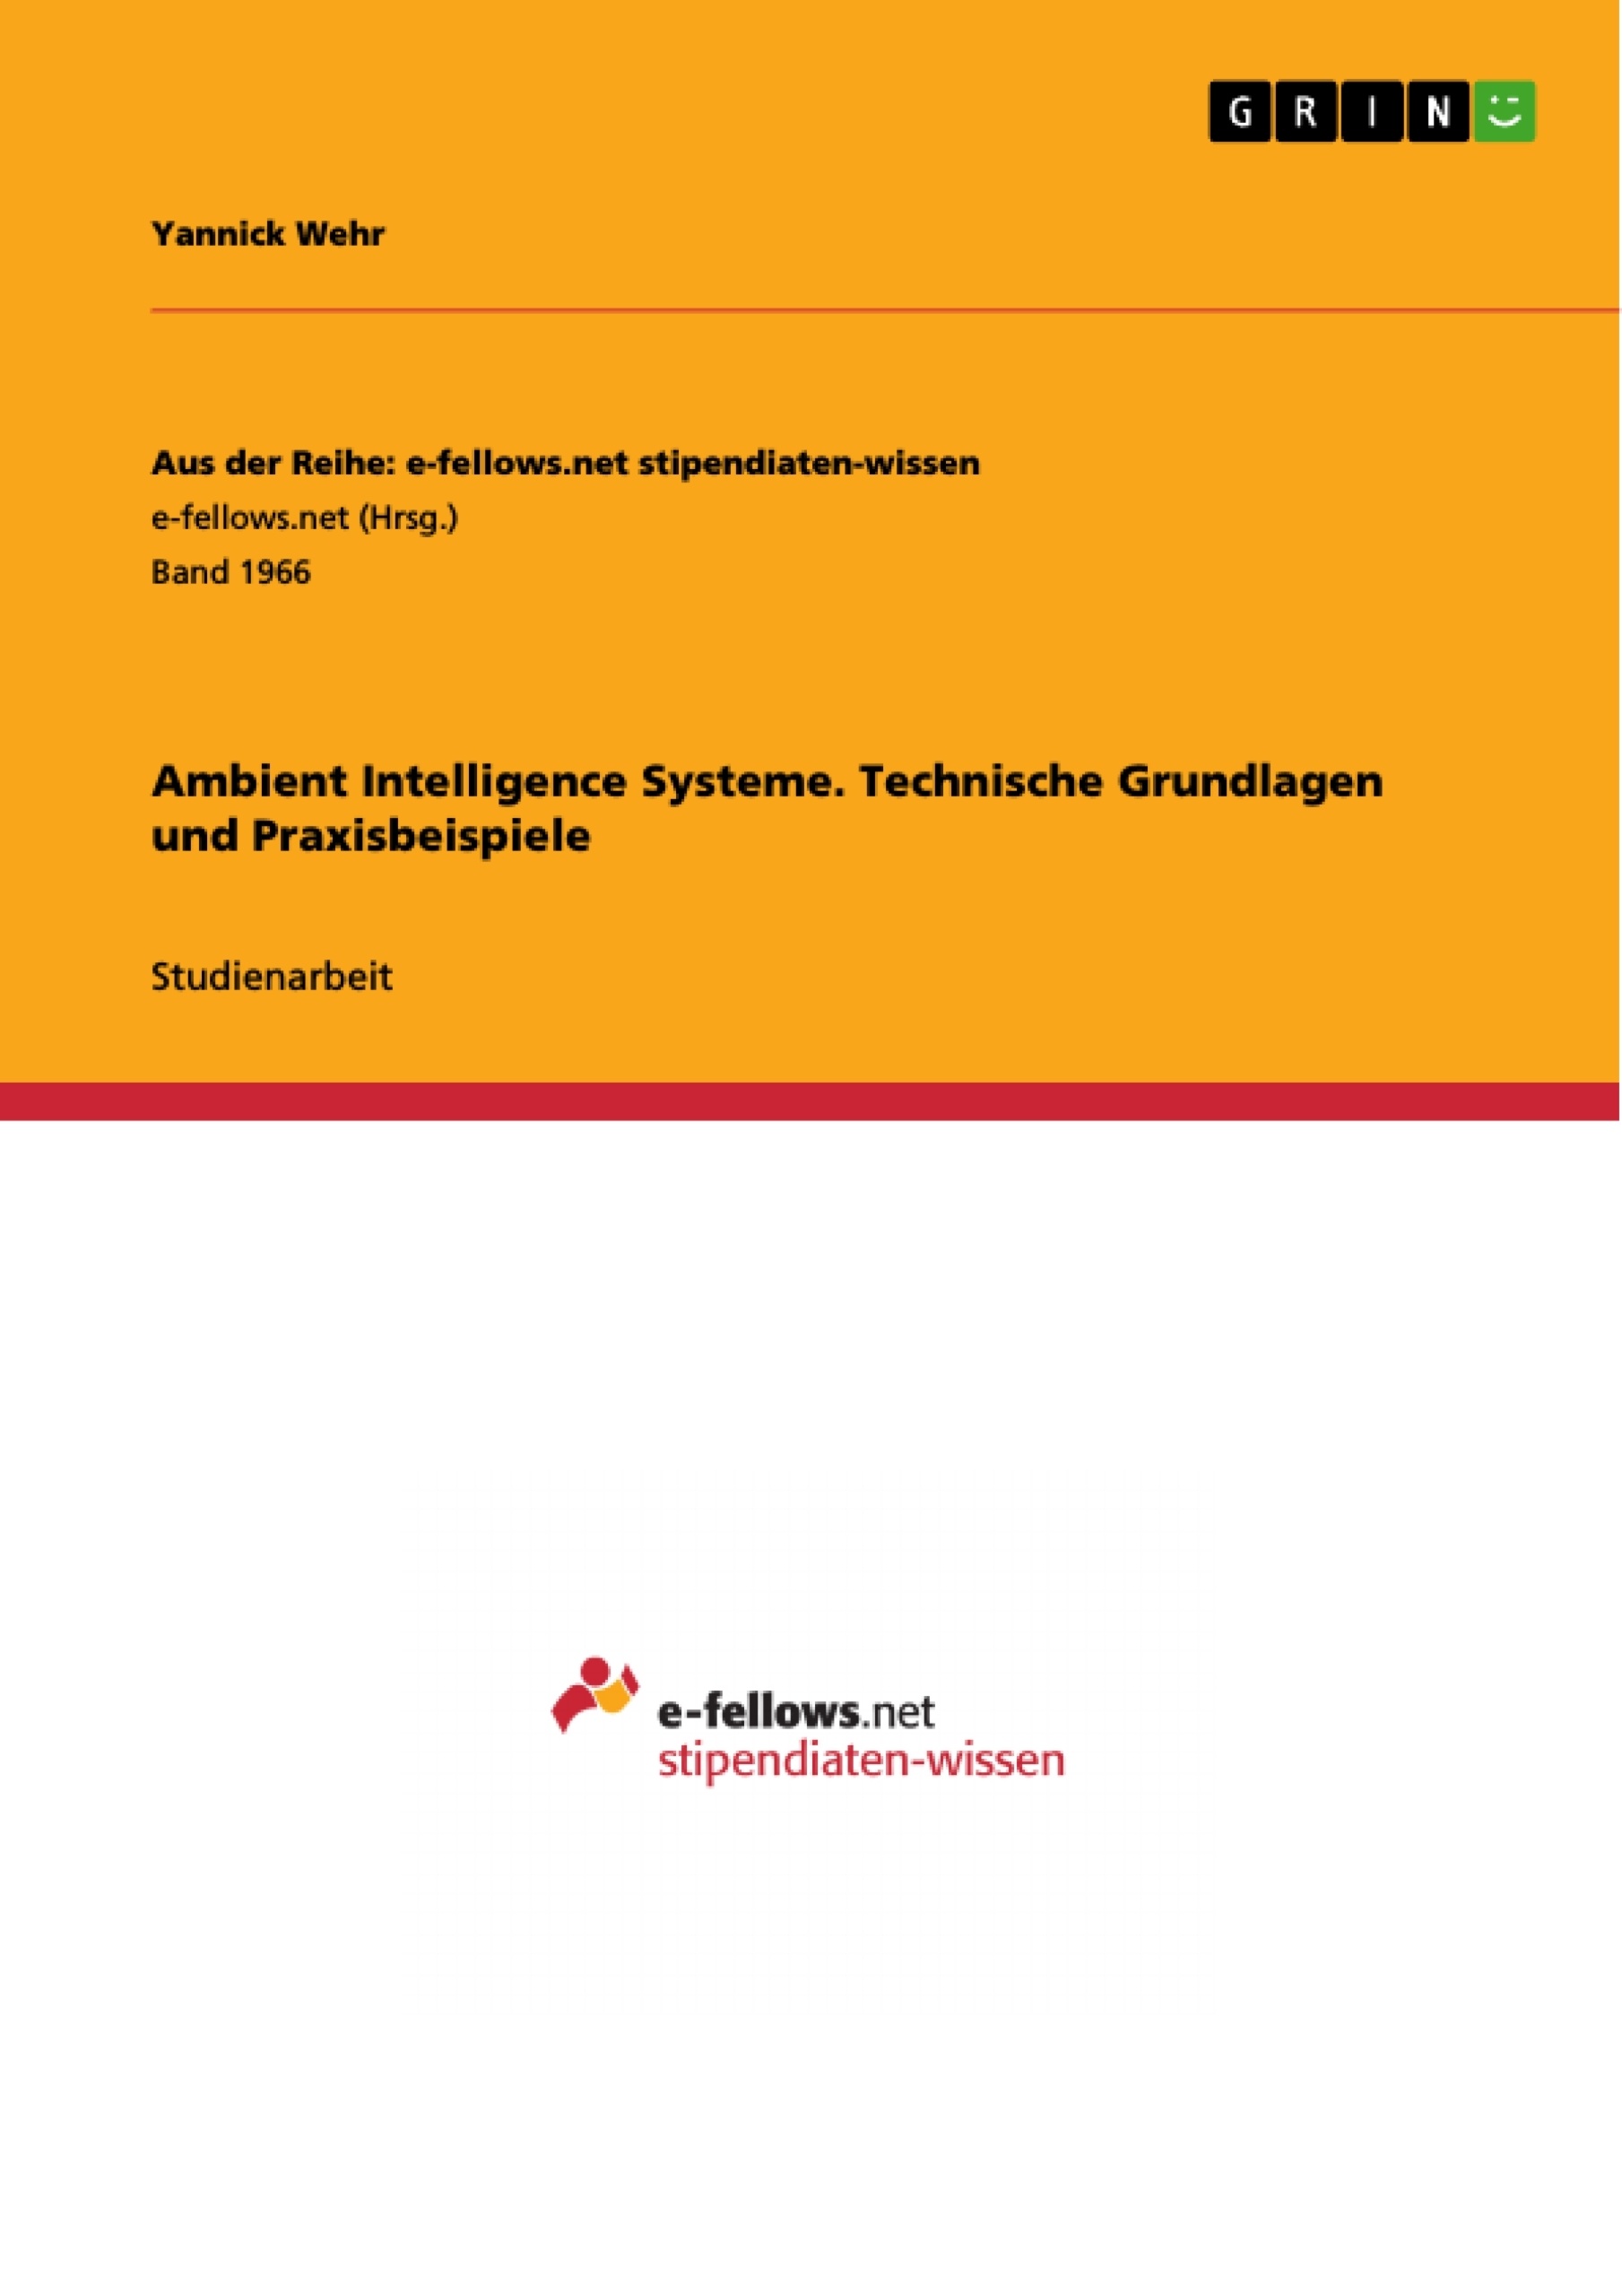 Title: Ambient Intelligence Systeme. Technische Grundlagen und Praxisbeispiele